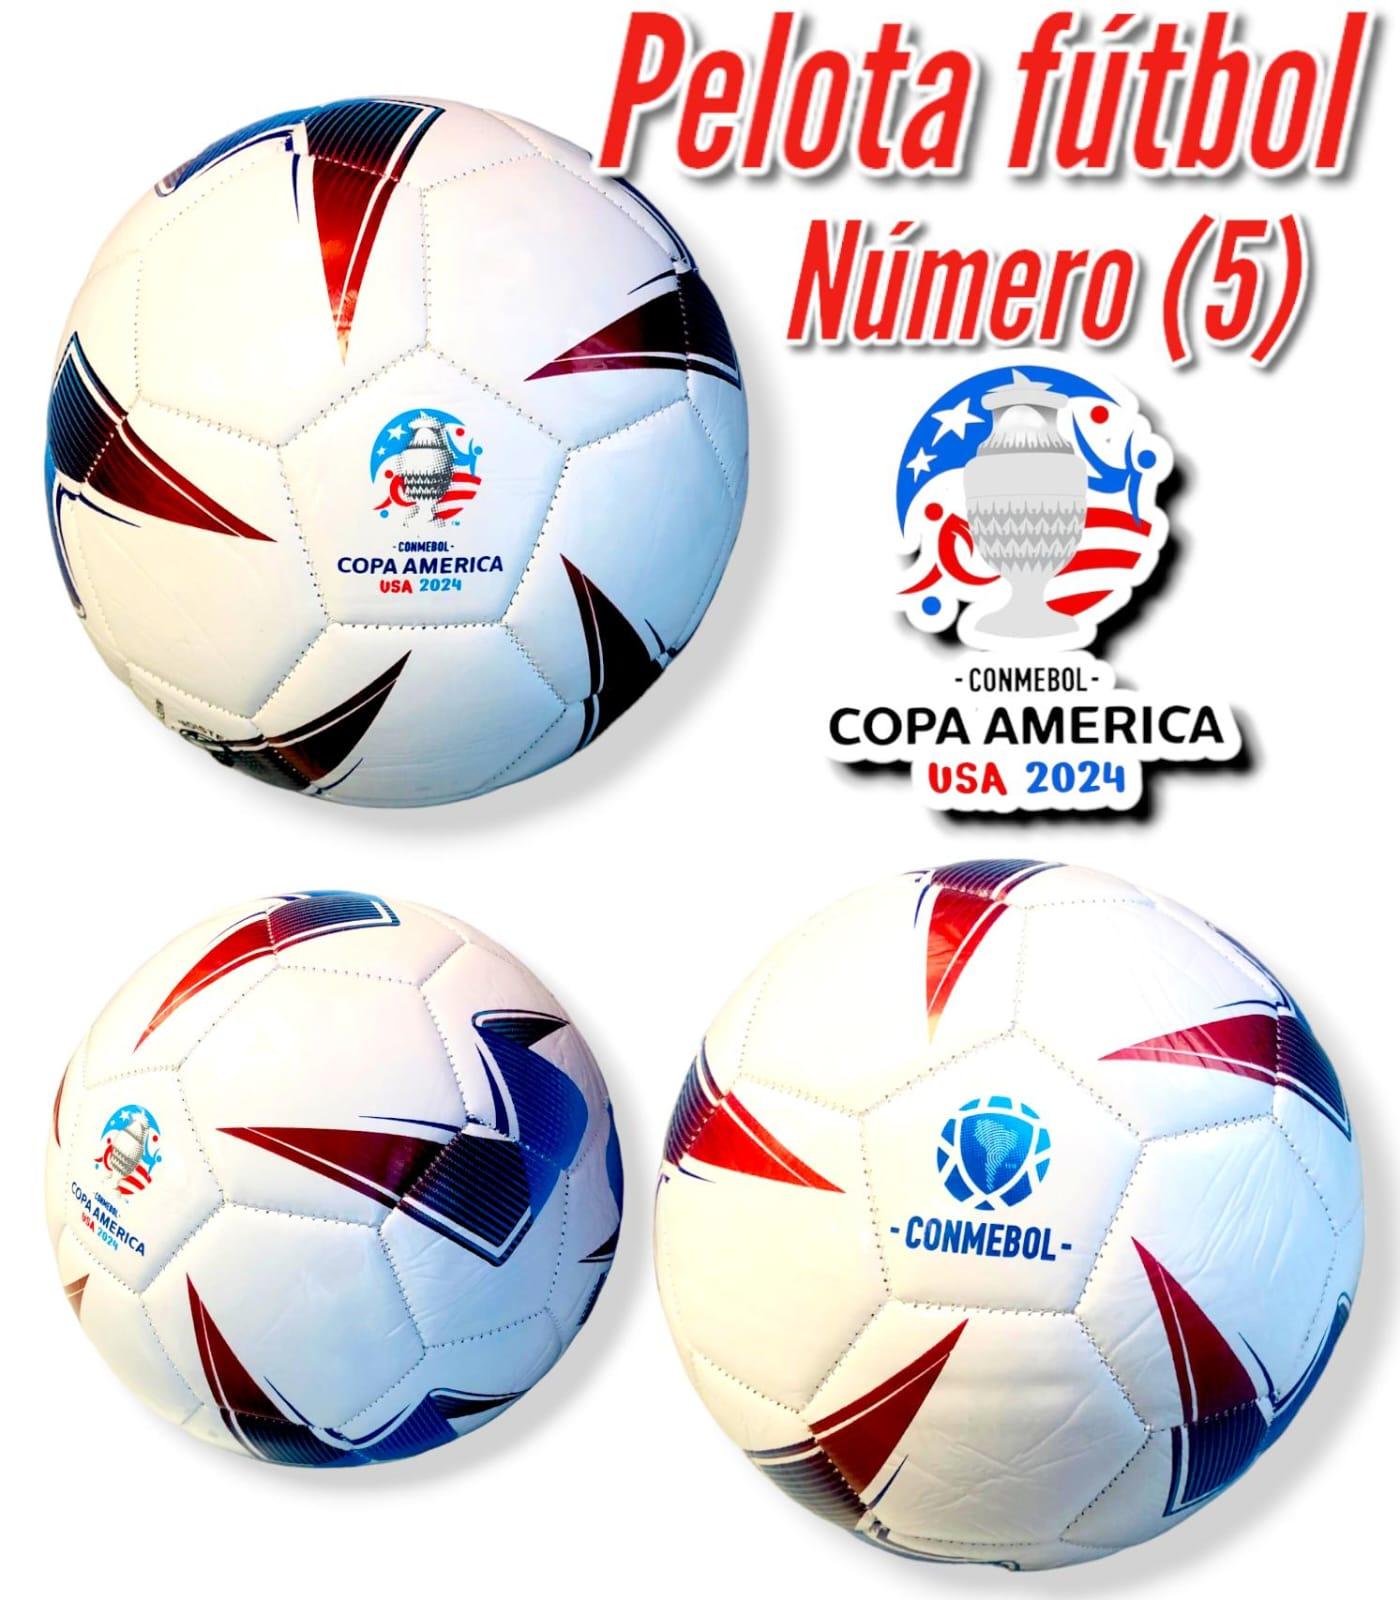 Pelota de Futbol Numero (5) COPA AMERICA USA 2024 CONMEBOL